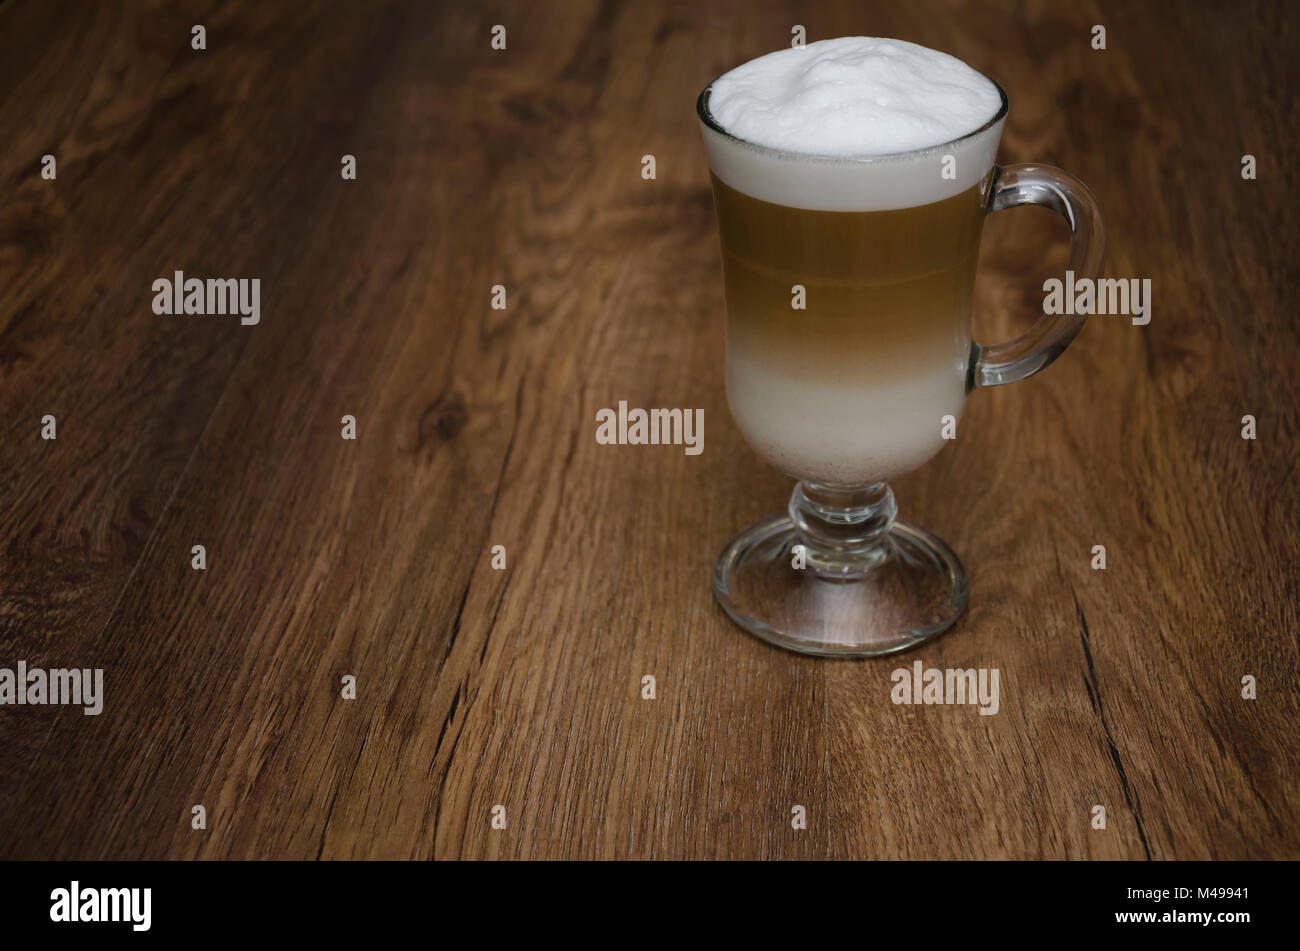 Boisson chaude avec du café et du lait, latte, cappuccino, dans un beau verre en verre, sur une table en bois Banque D'Images